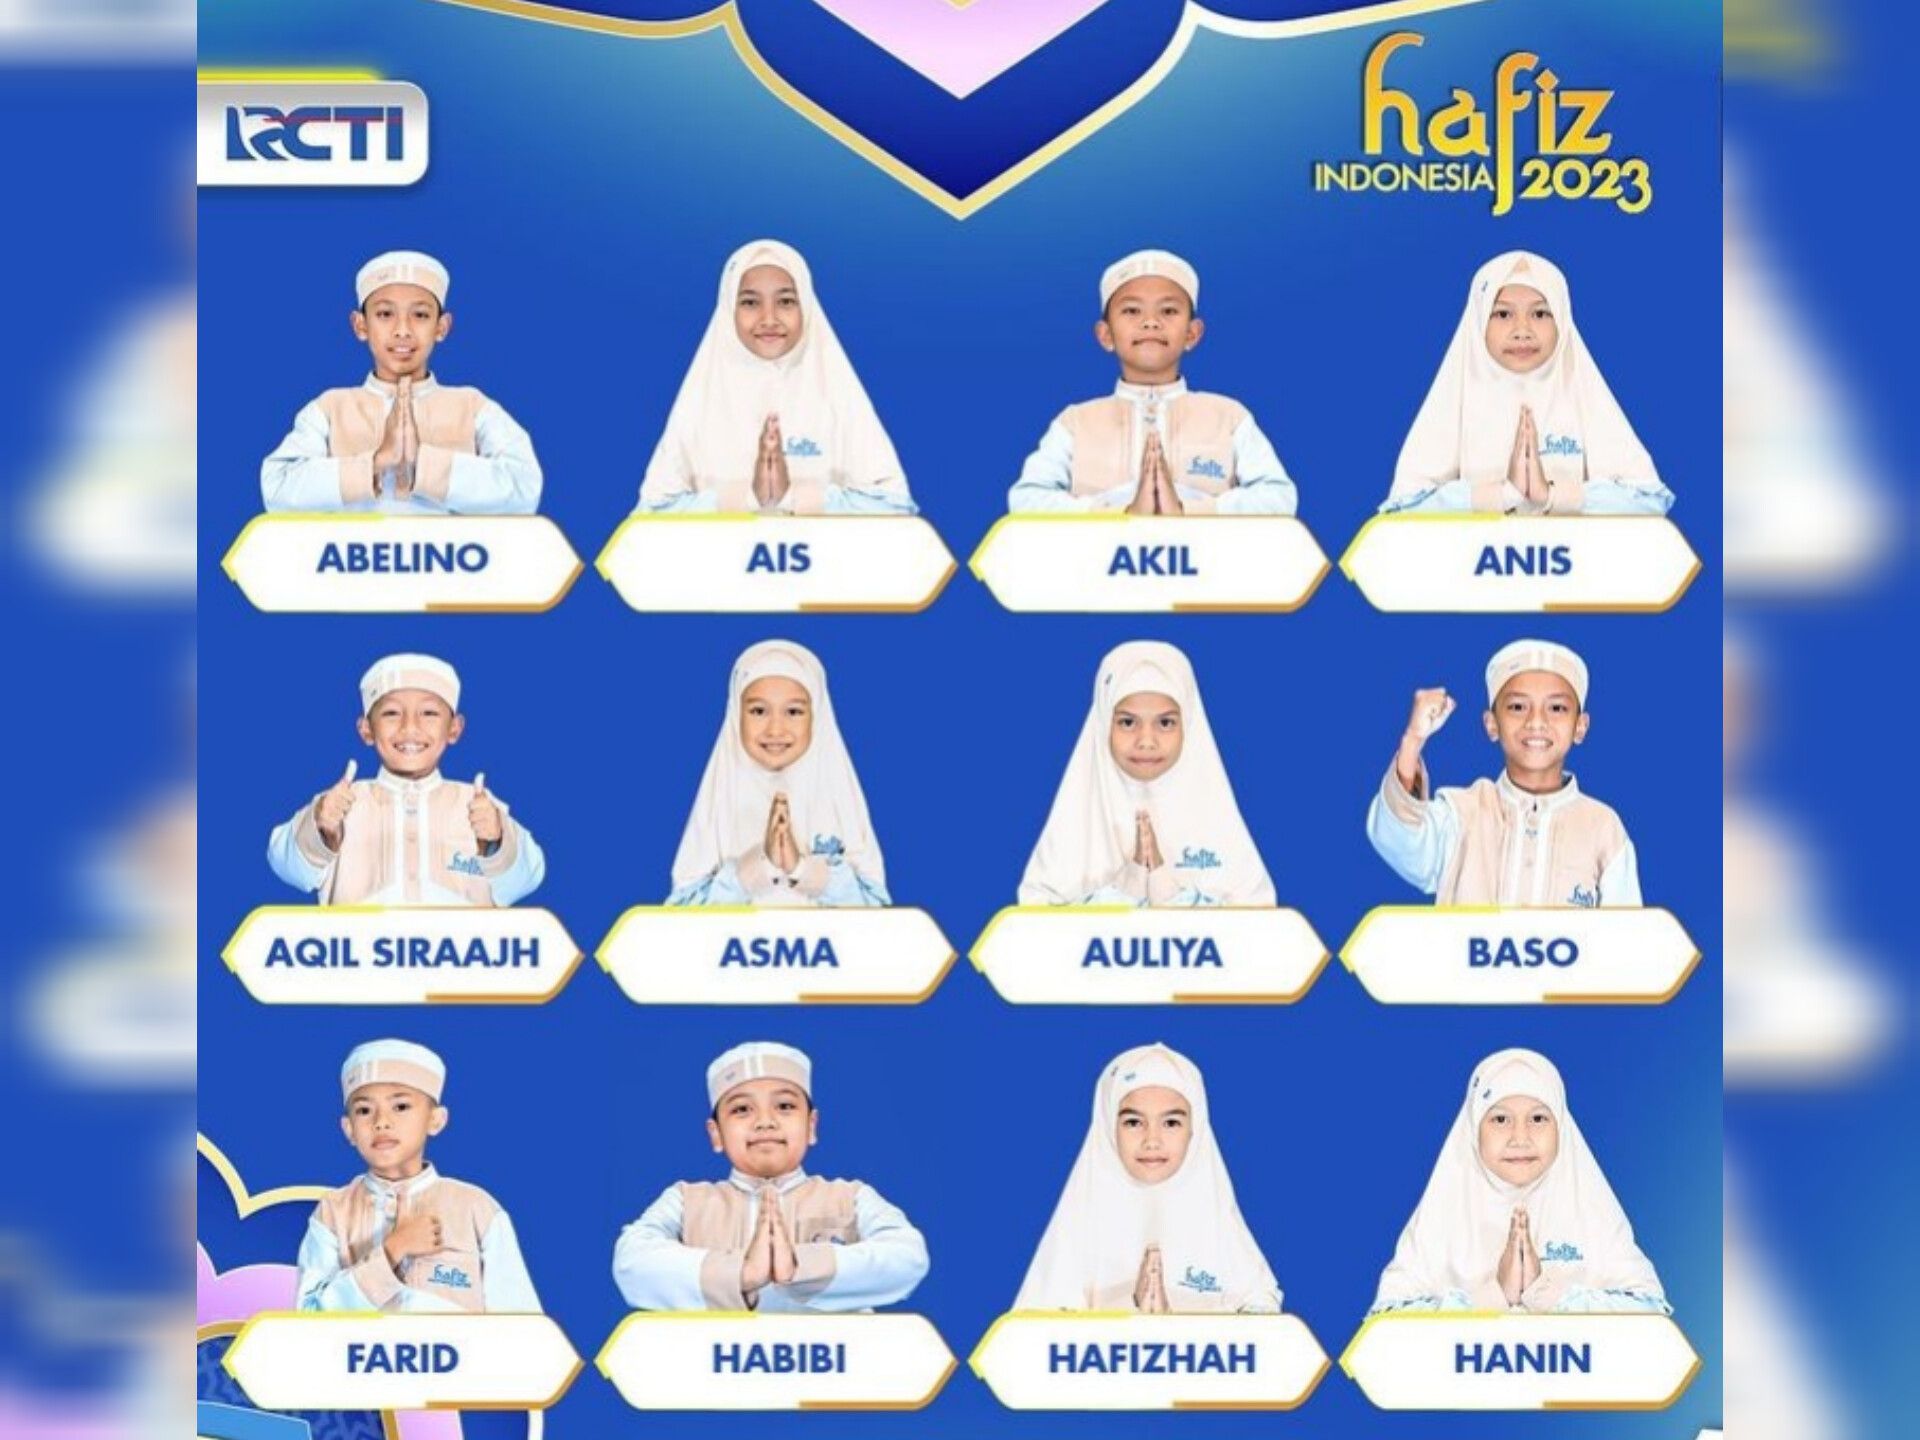 Jadwal acara RCTI hari ini, Minggu 2 April 2023, saksikan Hafiz Indonesia 2023